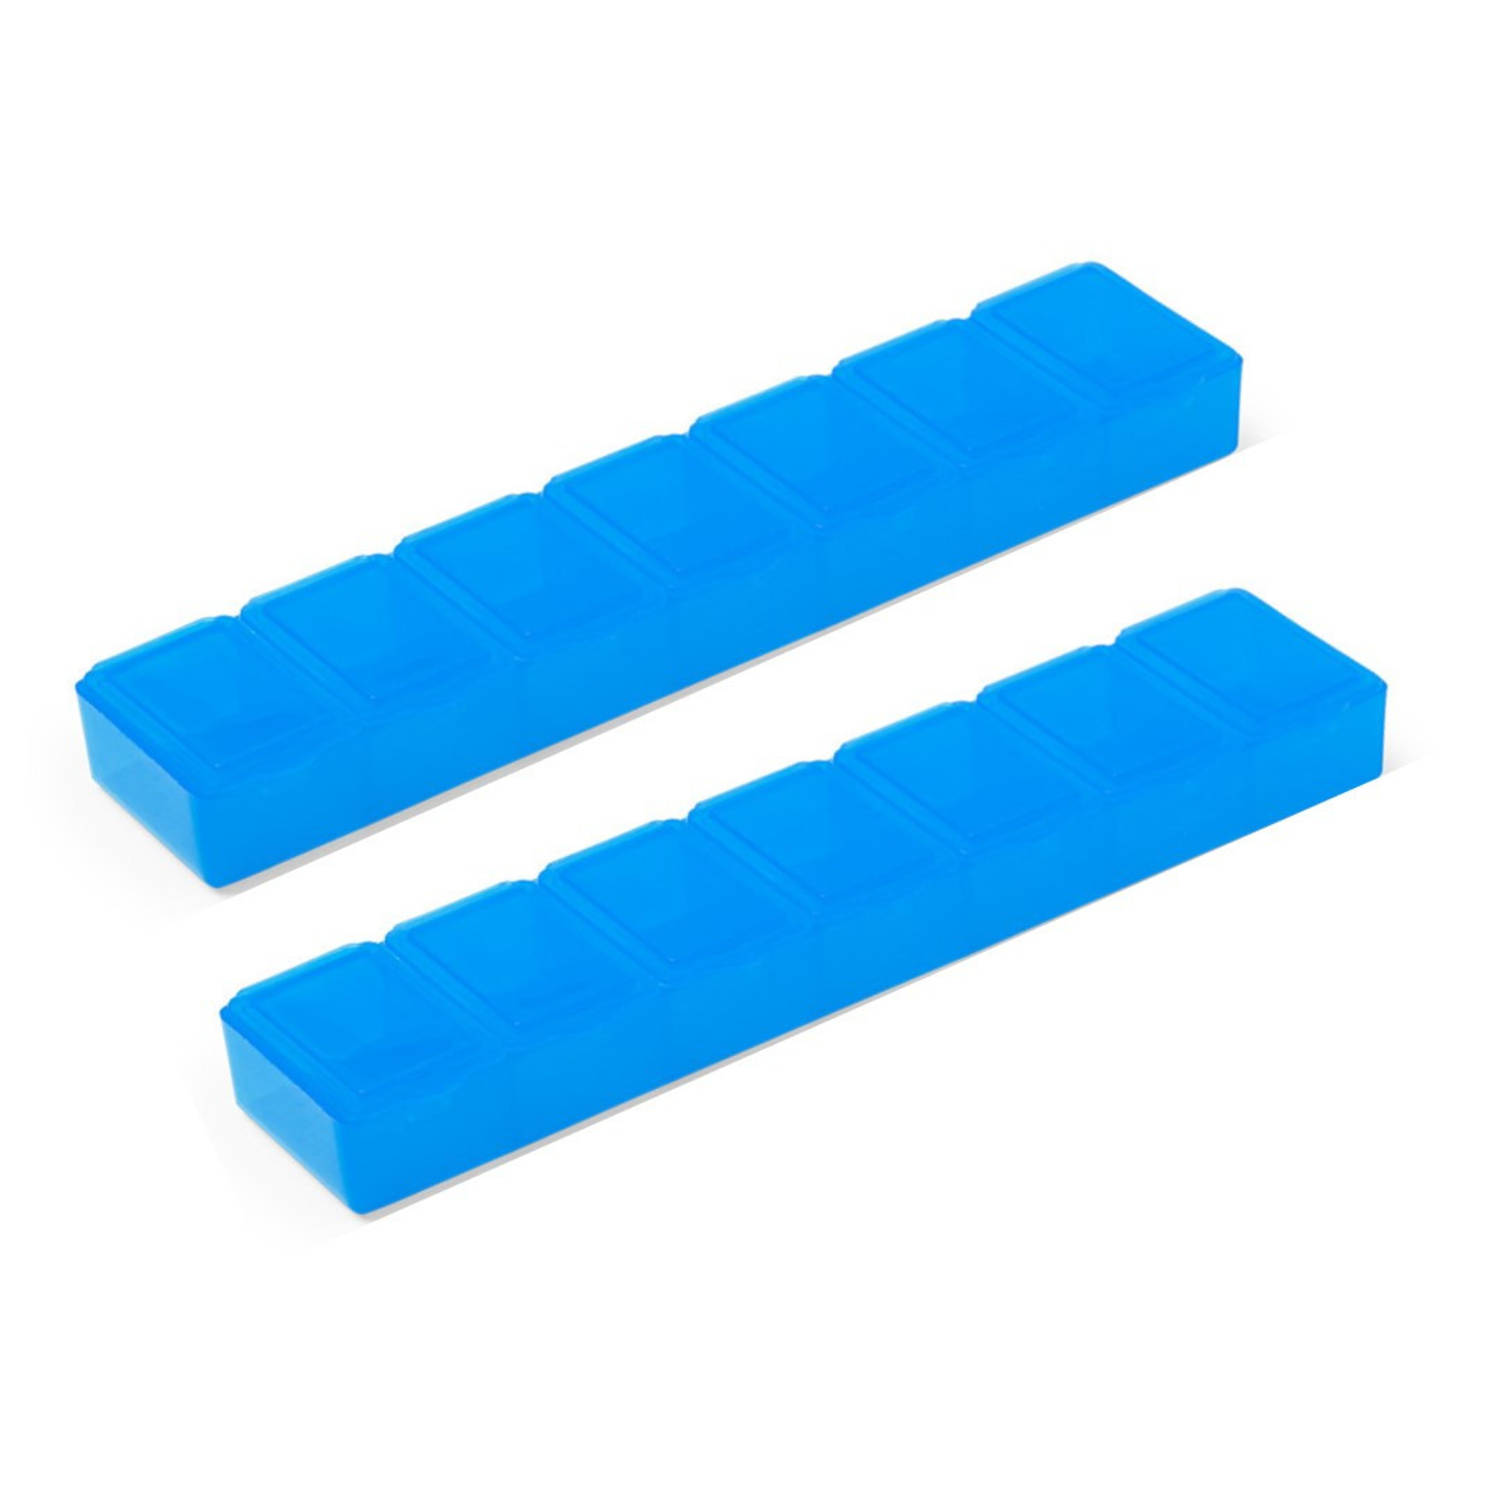 2x Medicijnen doos/pillendoos 7 daags blauw 15 cm - Pillendoosjes | Blokker